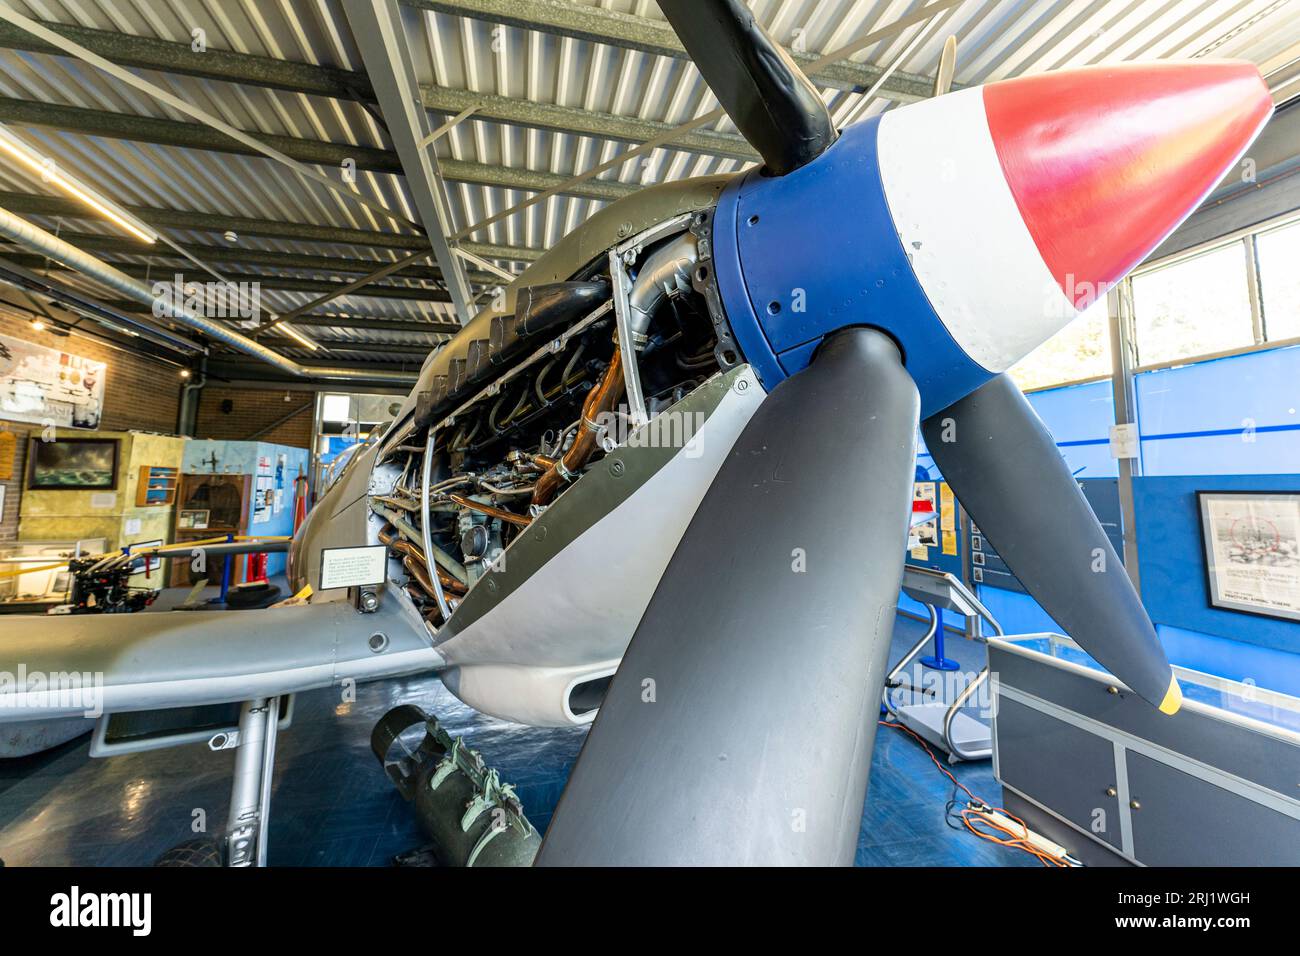 RAF Spitfire XVI exposé à l'intérieur du musée commémoratif Spitfire à l'aérodrome de Manston dans le Kent. Gros plan de l'hélice et de la coupure montrant le moteur Merlin. Banque D'Images